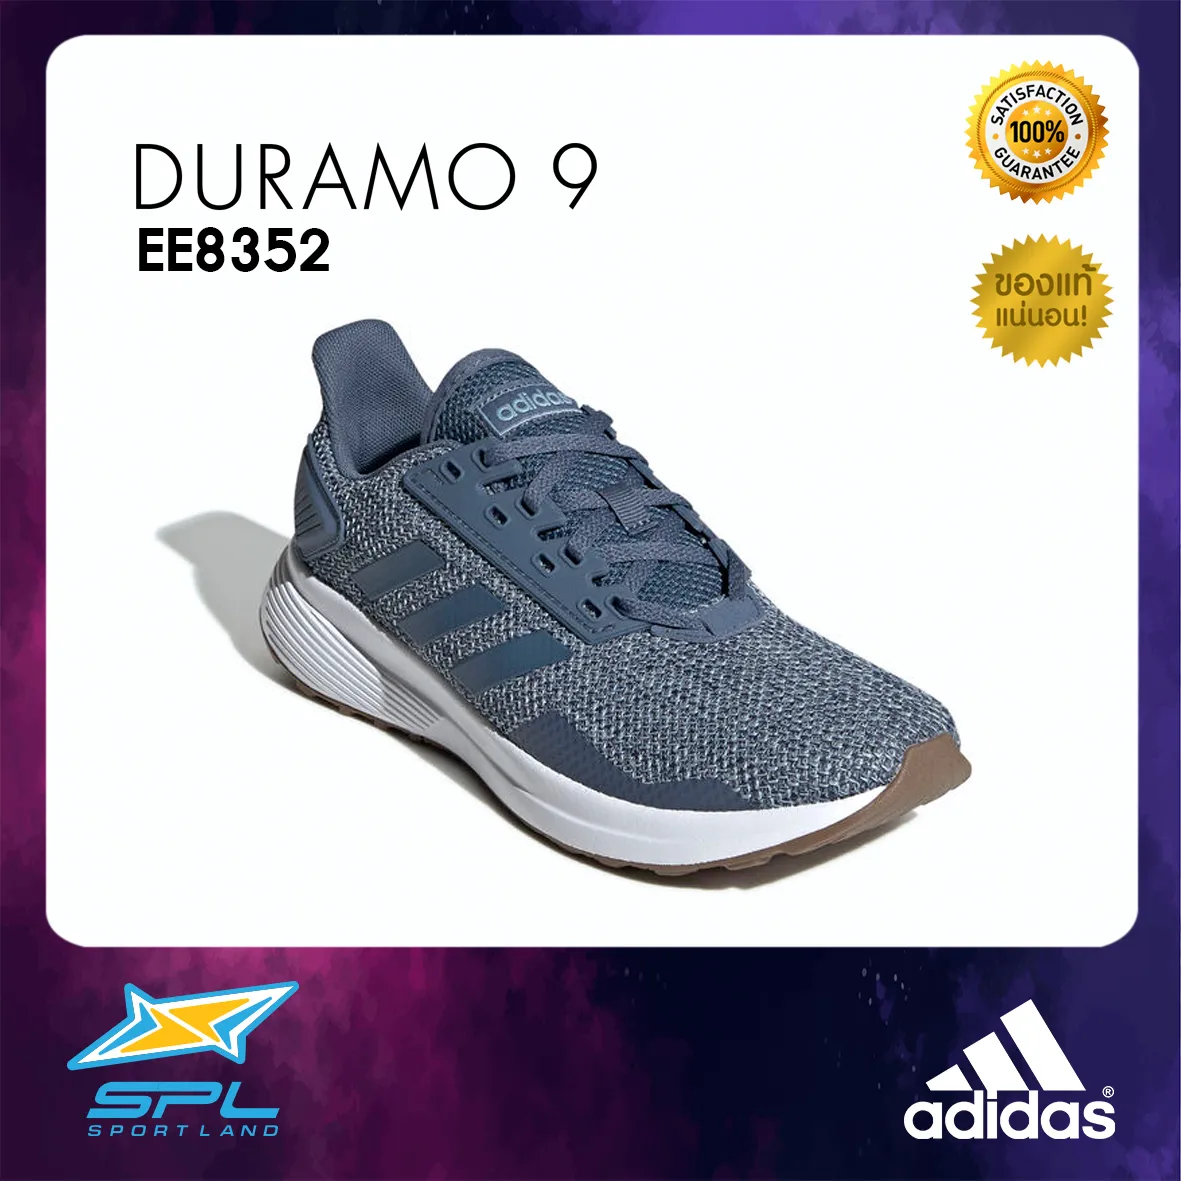 Adidas รองเท้า รองเท้าวิ่ง รองเท้าผู้หญิง รองเท้าแฟชั่น อาดิดาส Running Women Shoe Duramo 9 EE8352 (2000)